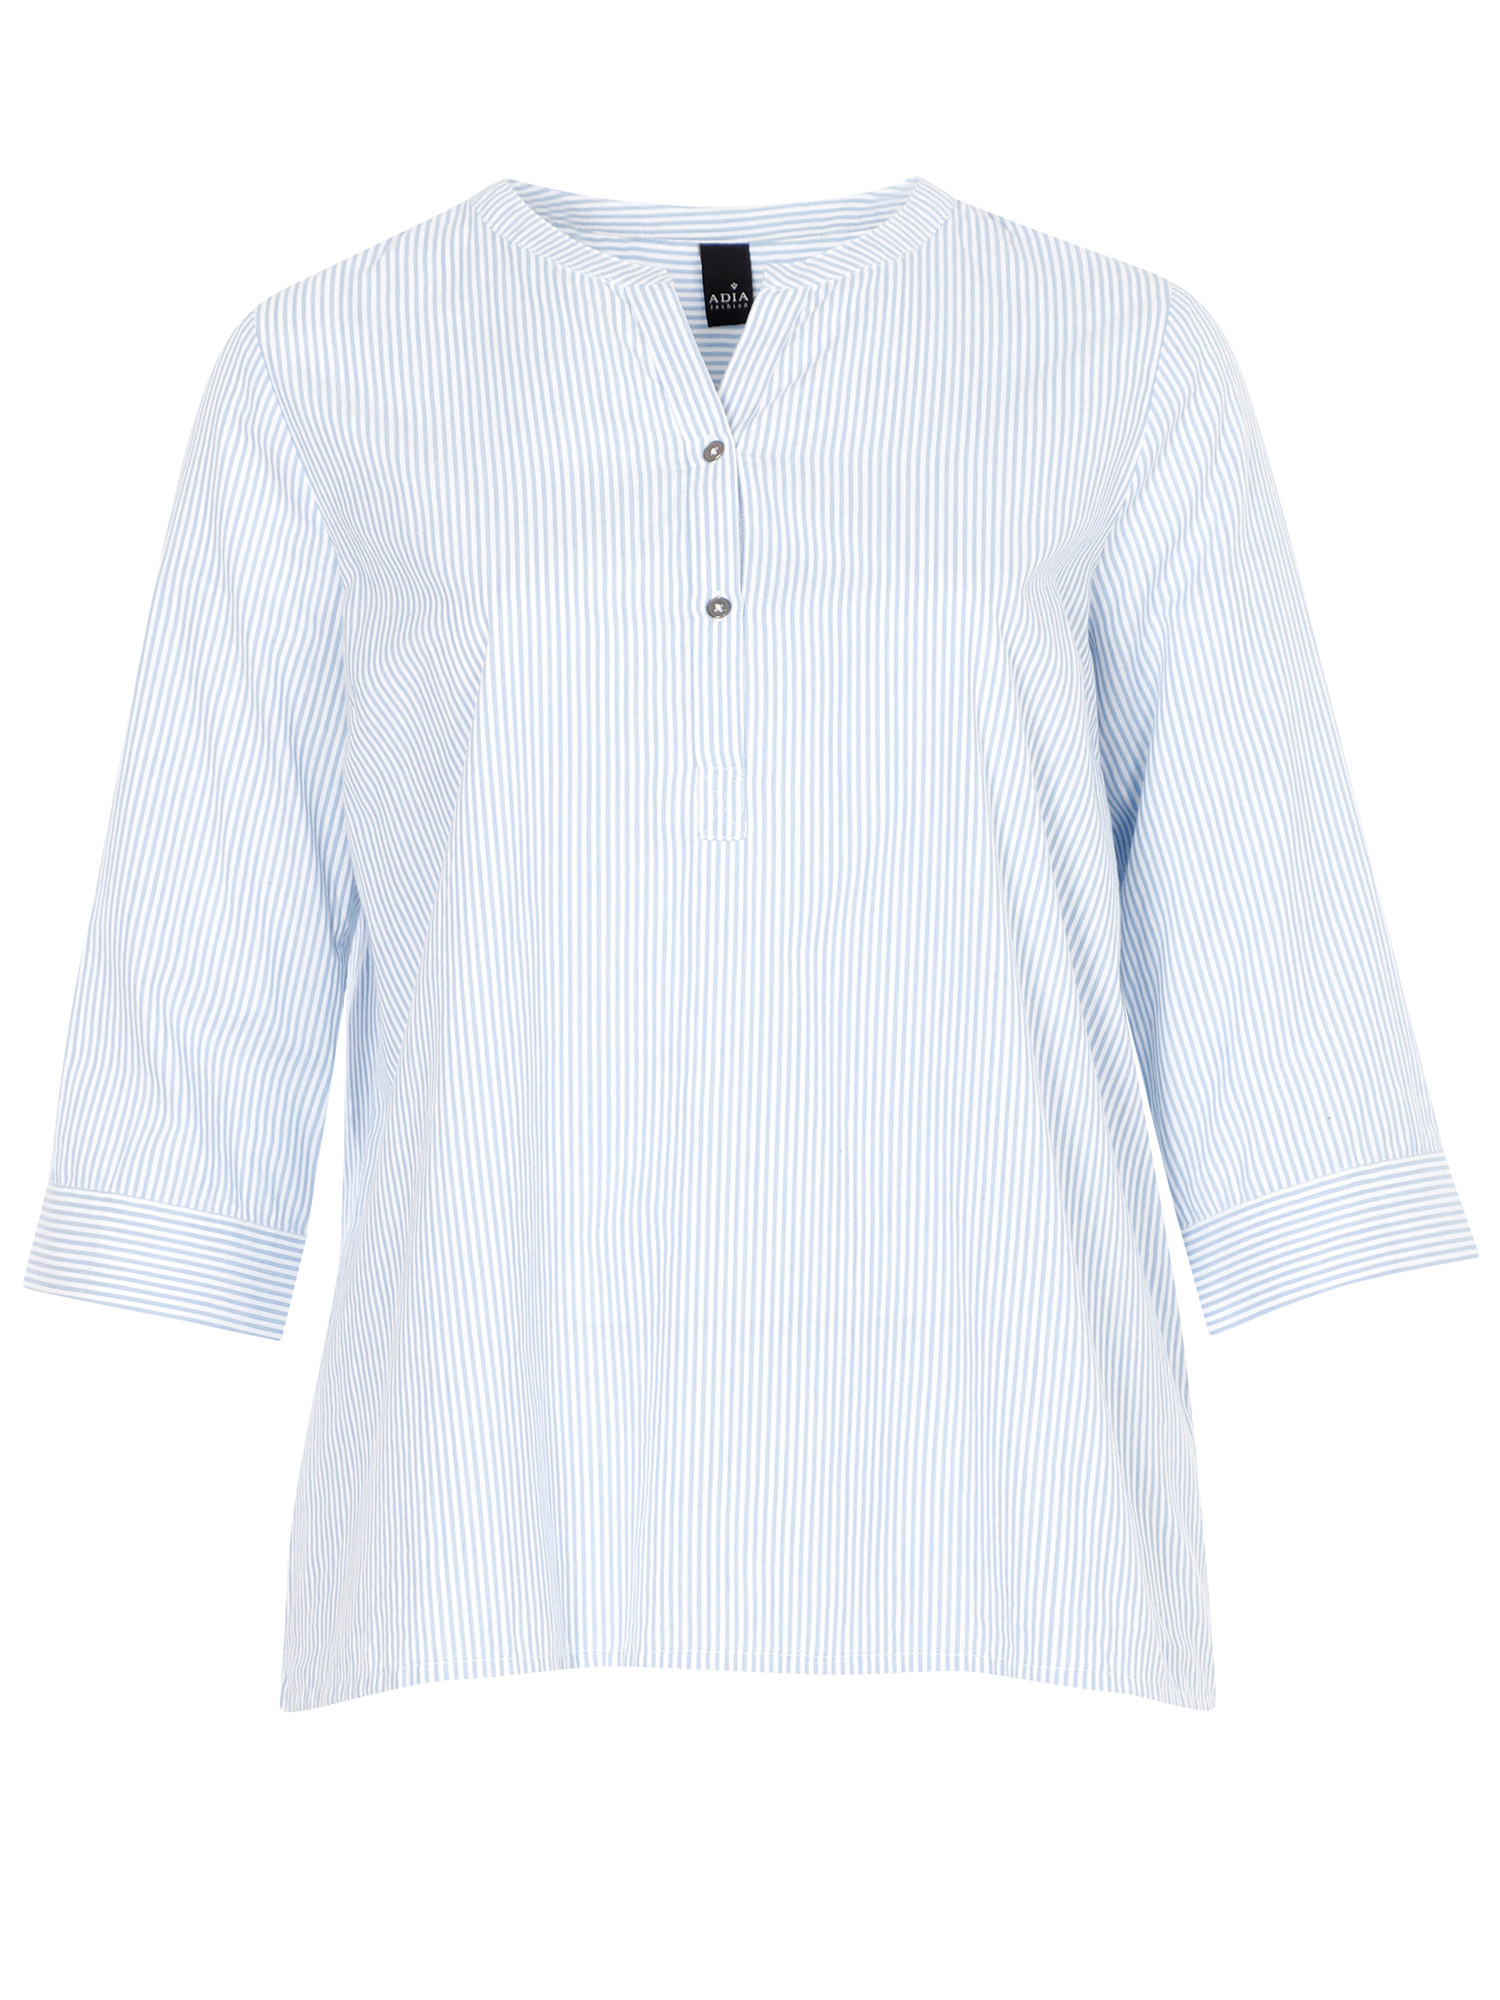 skjorte i bomull med blå og hvite striper fra Adia